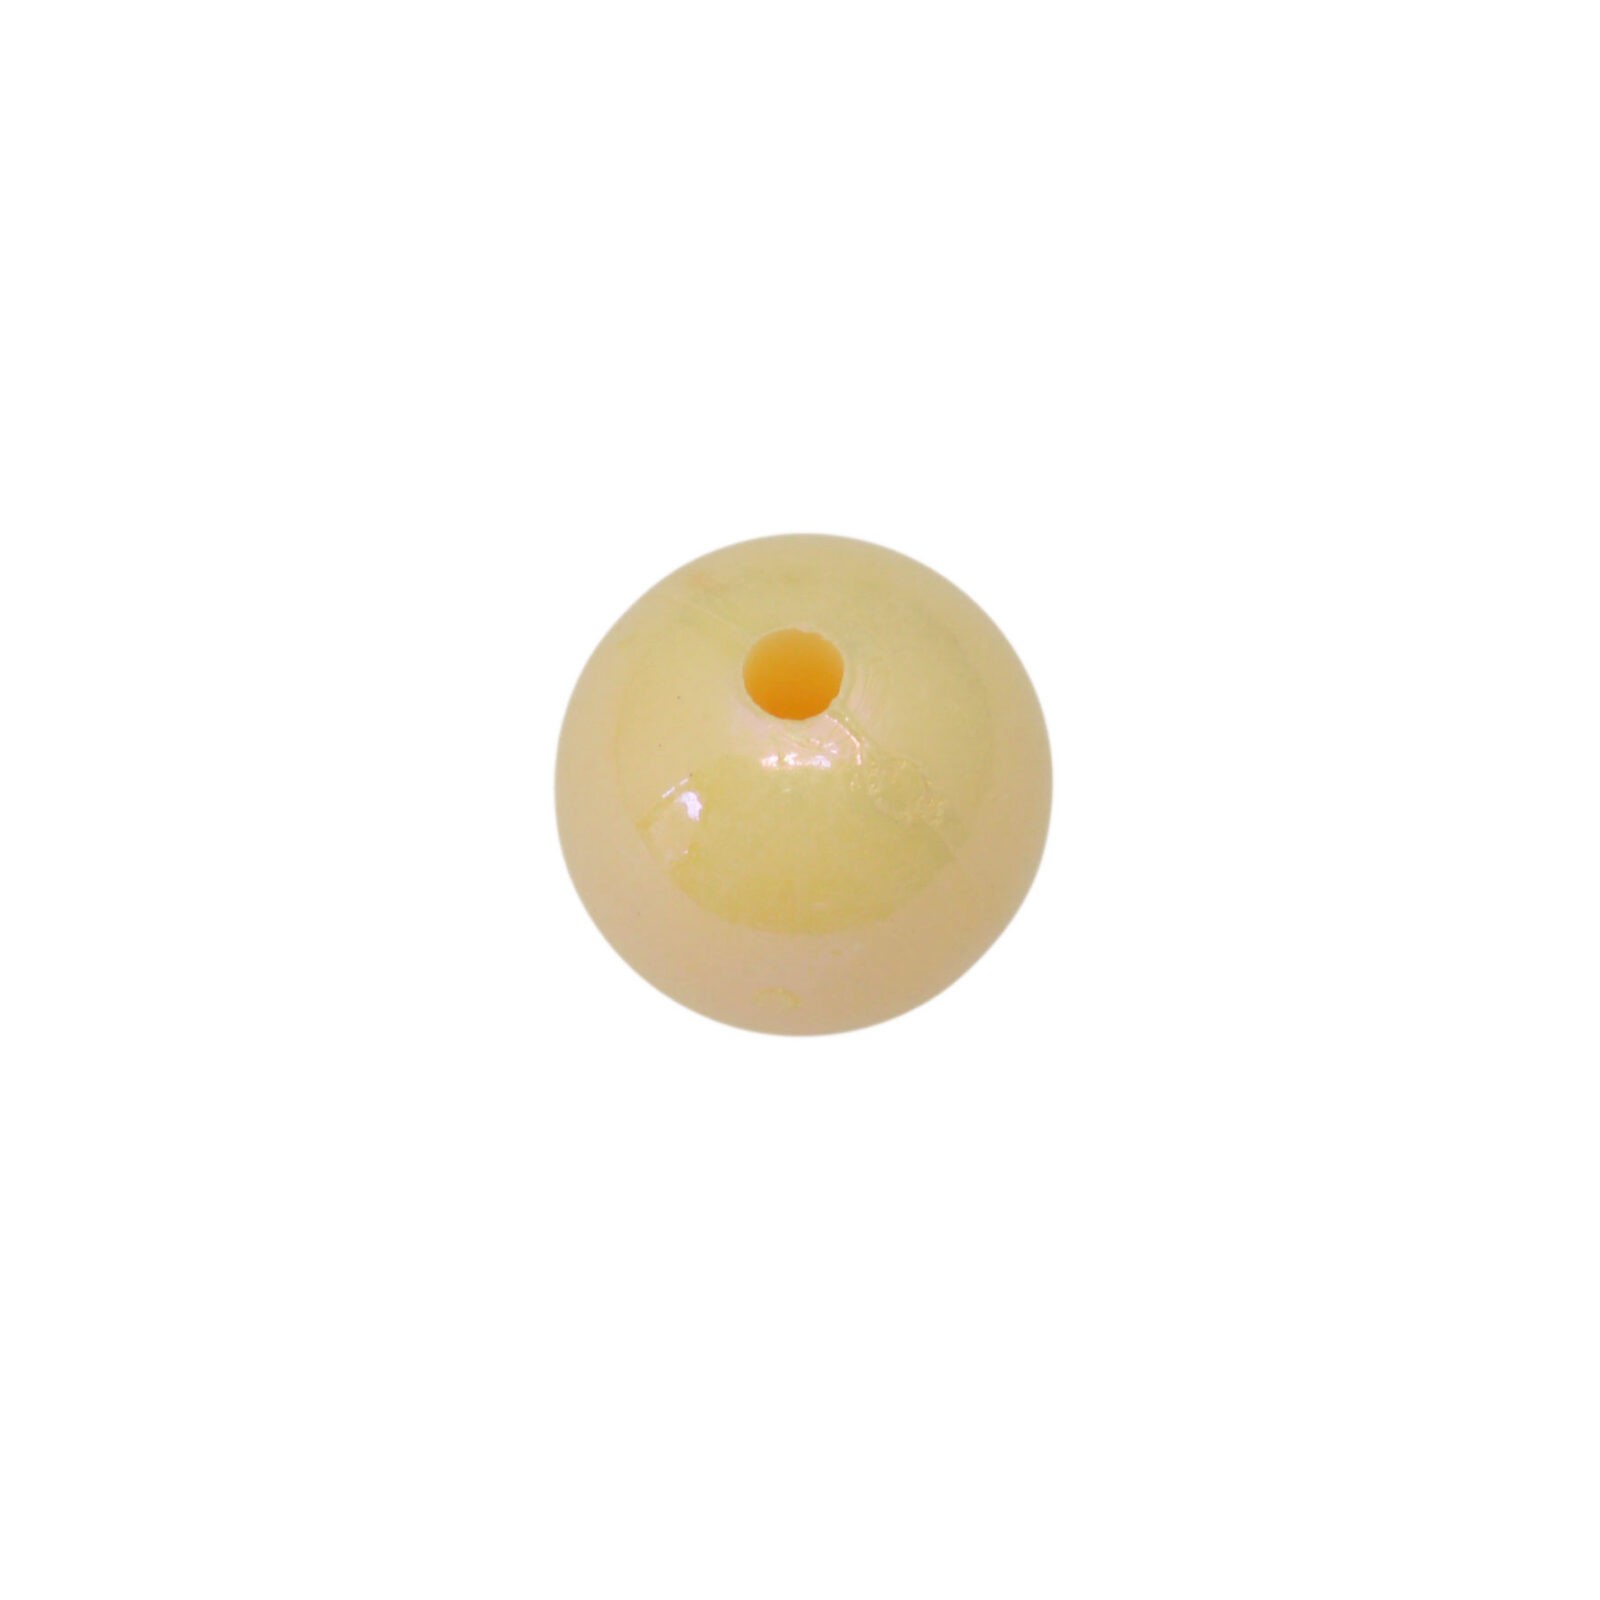 Gele/ oranje ronde acryl kraal (glans)